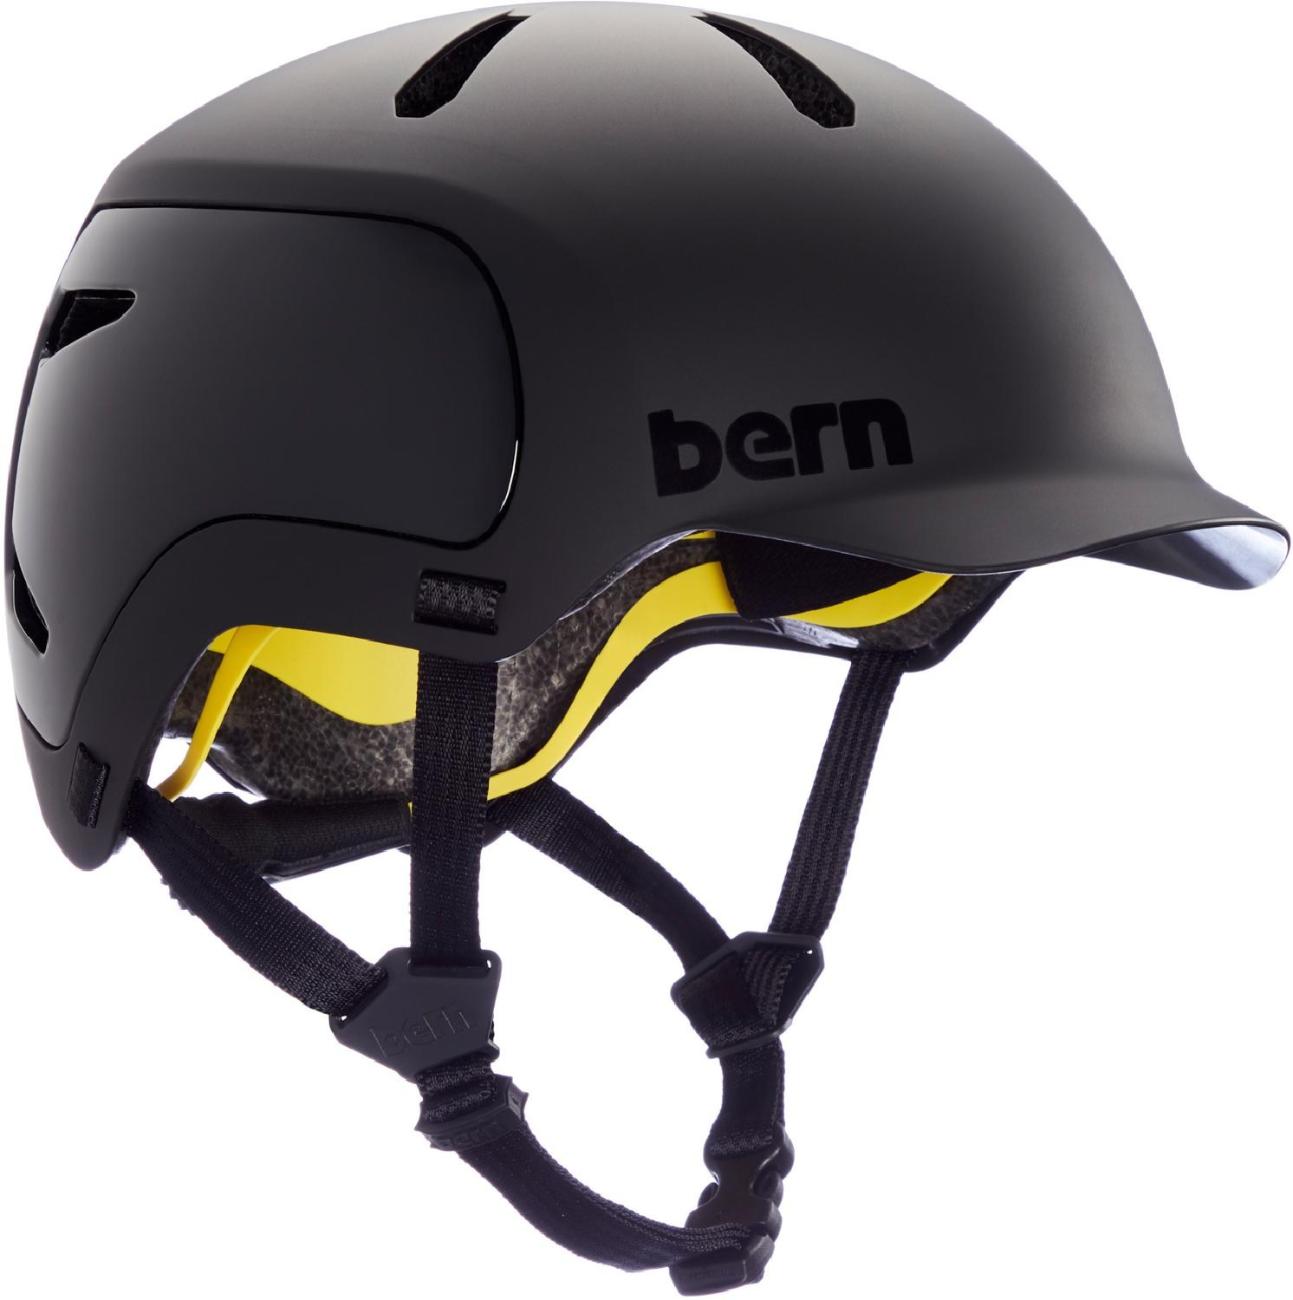 Велосипедный шлем Watts 2.0 MIPS Bern